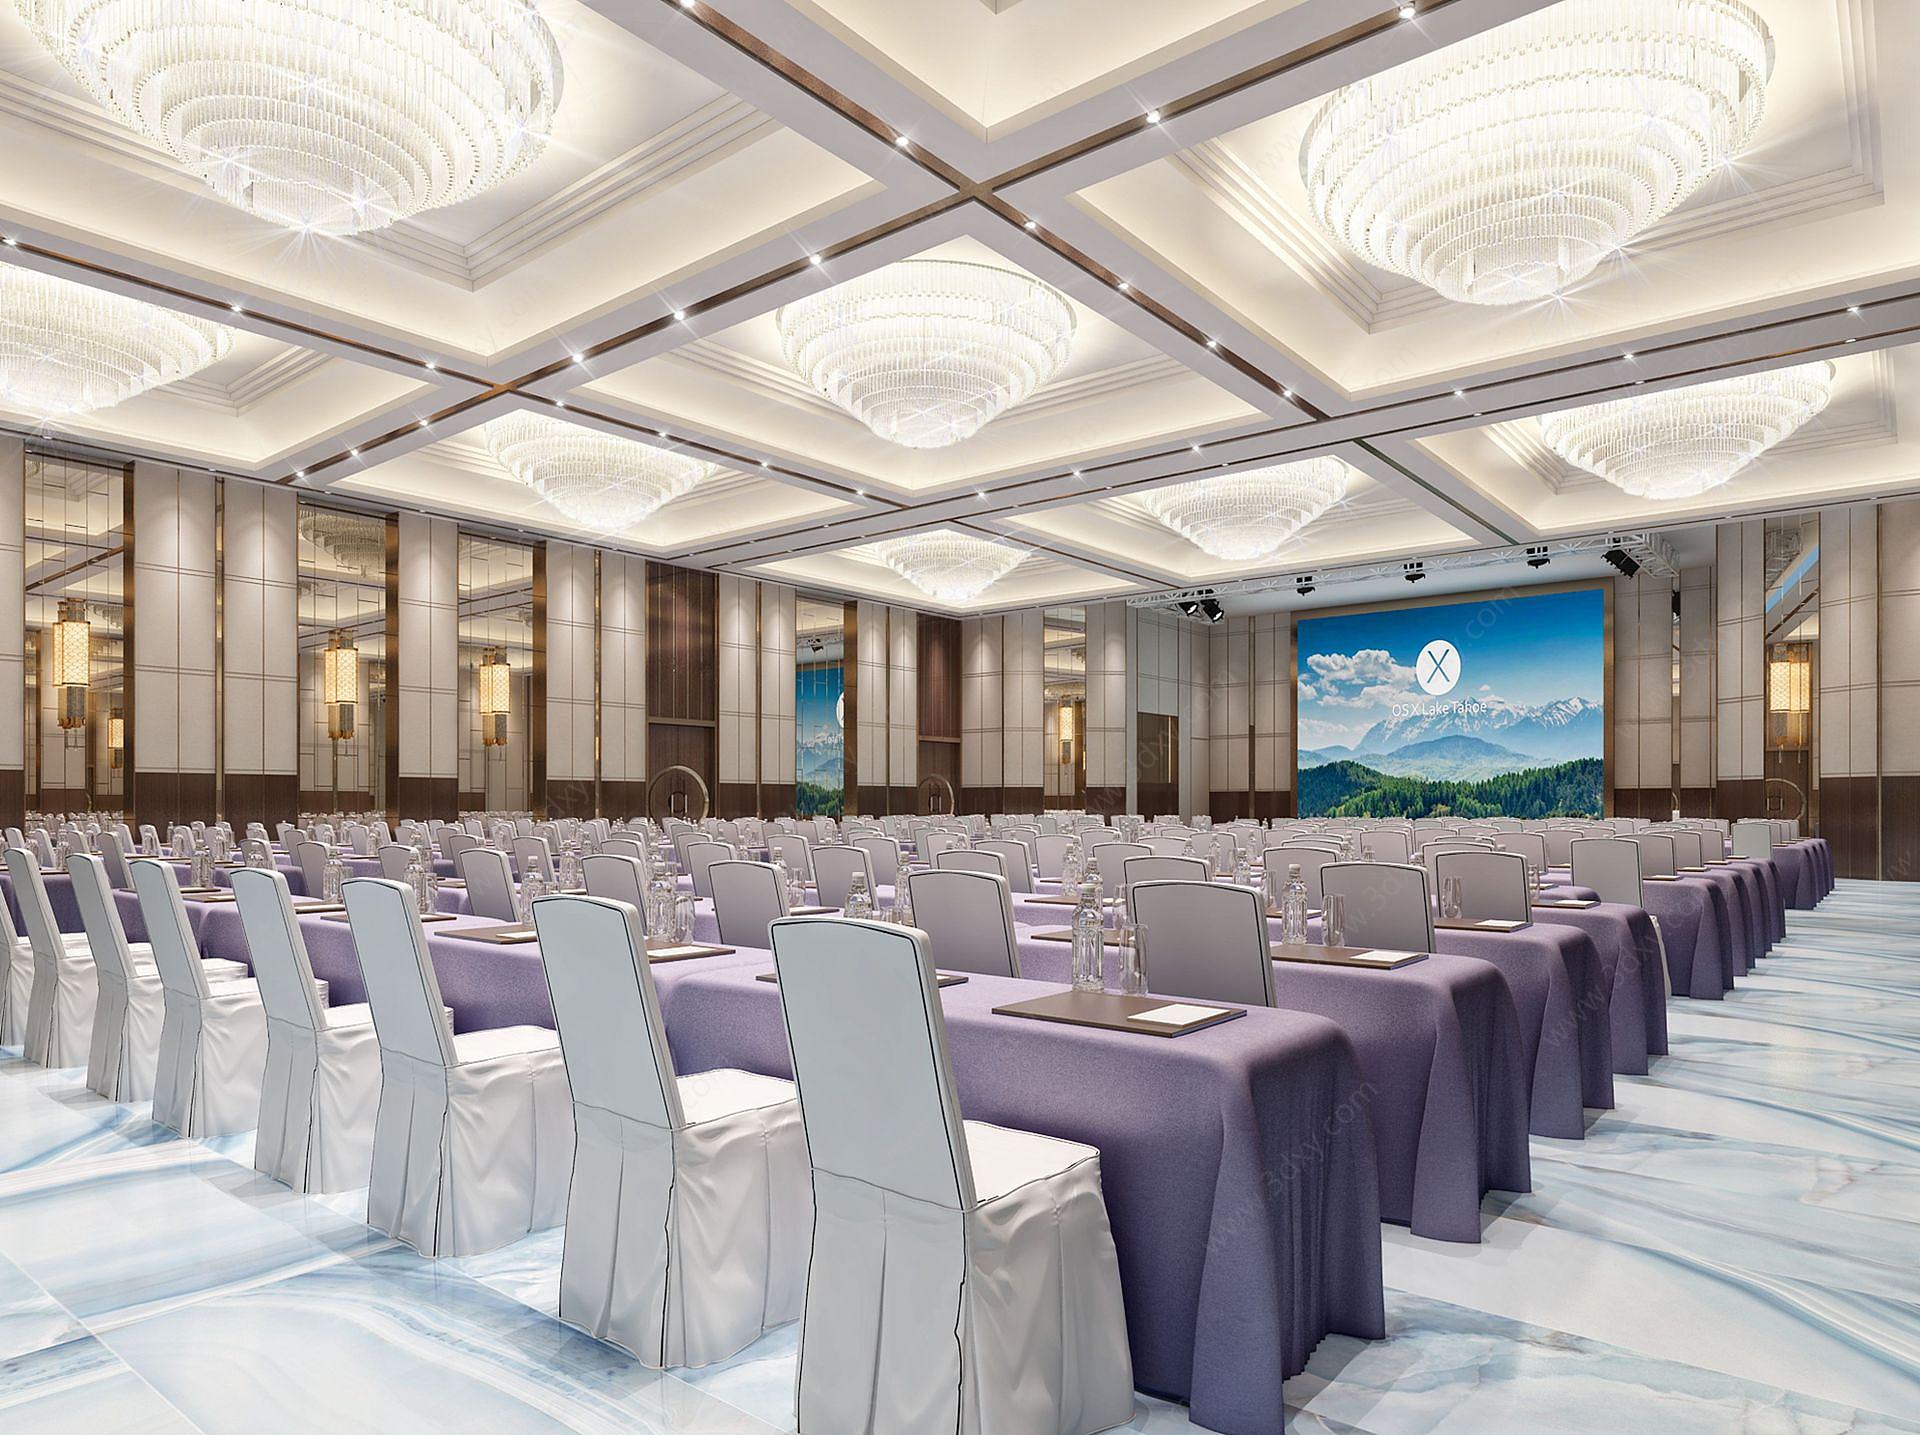 新中式酒店宴会厅3D模型